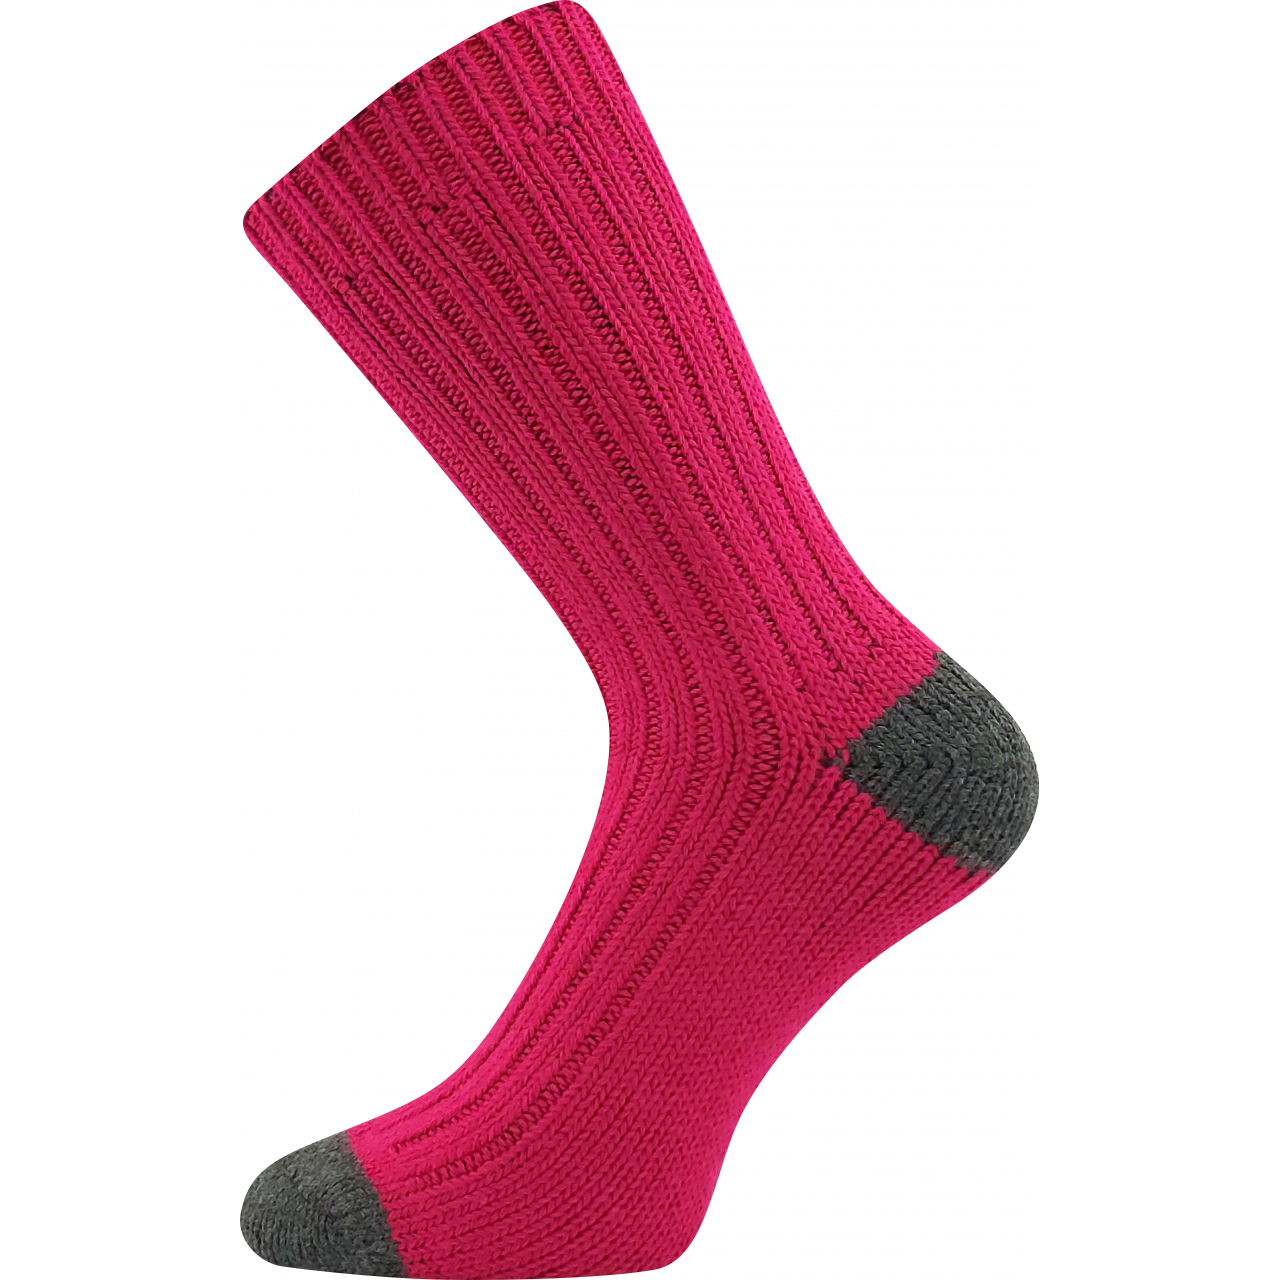 Ponožky dámské silné Voxx Marmolada - tmavě růžové, 39-42